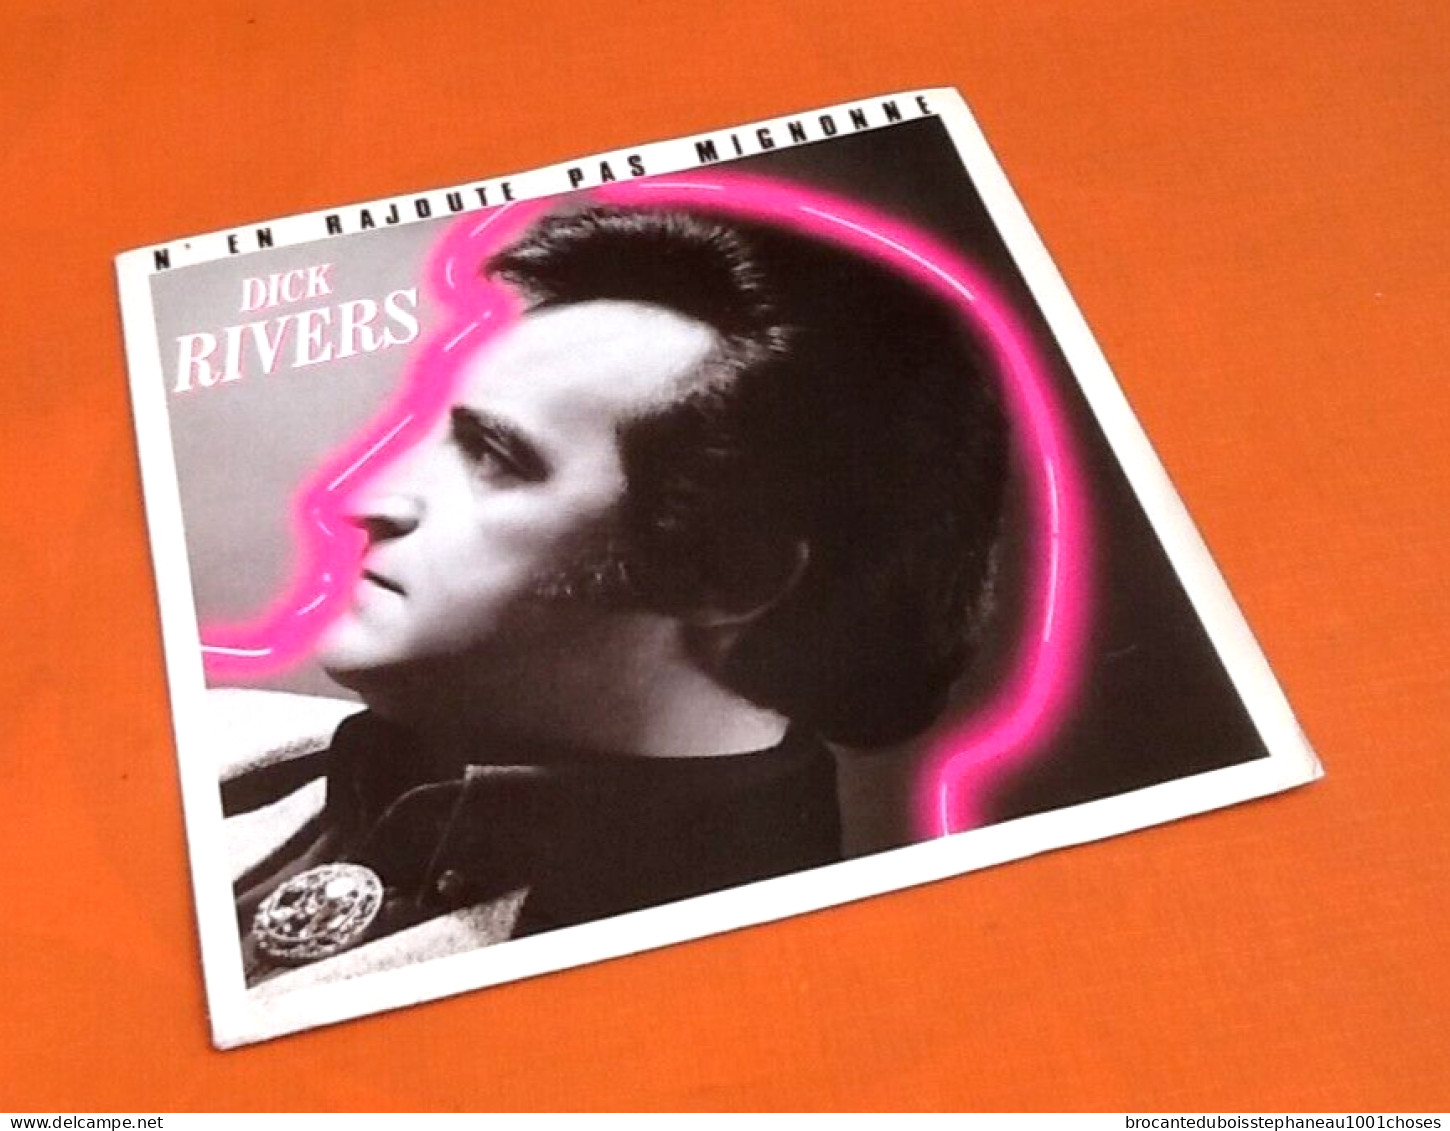 Vinyle 45 Tours  Dick Rivers ( Disque Promotionnel) N' En Rajoute Pas Mignonne (1986) - Rock